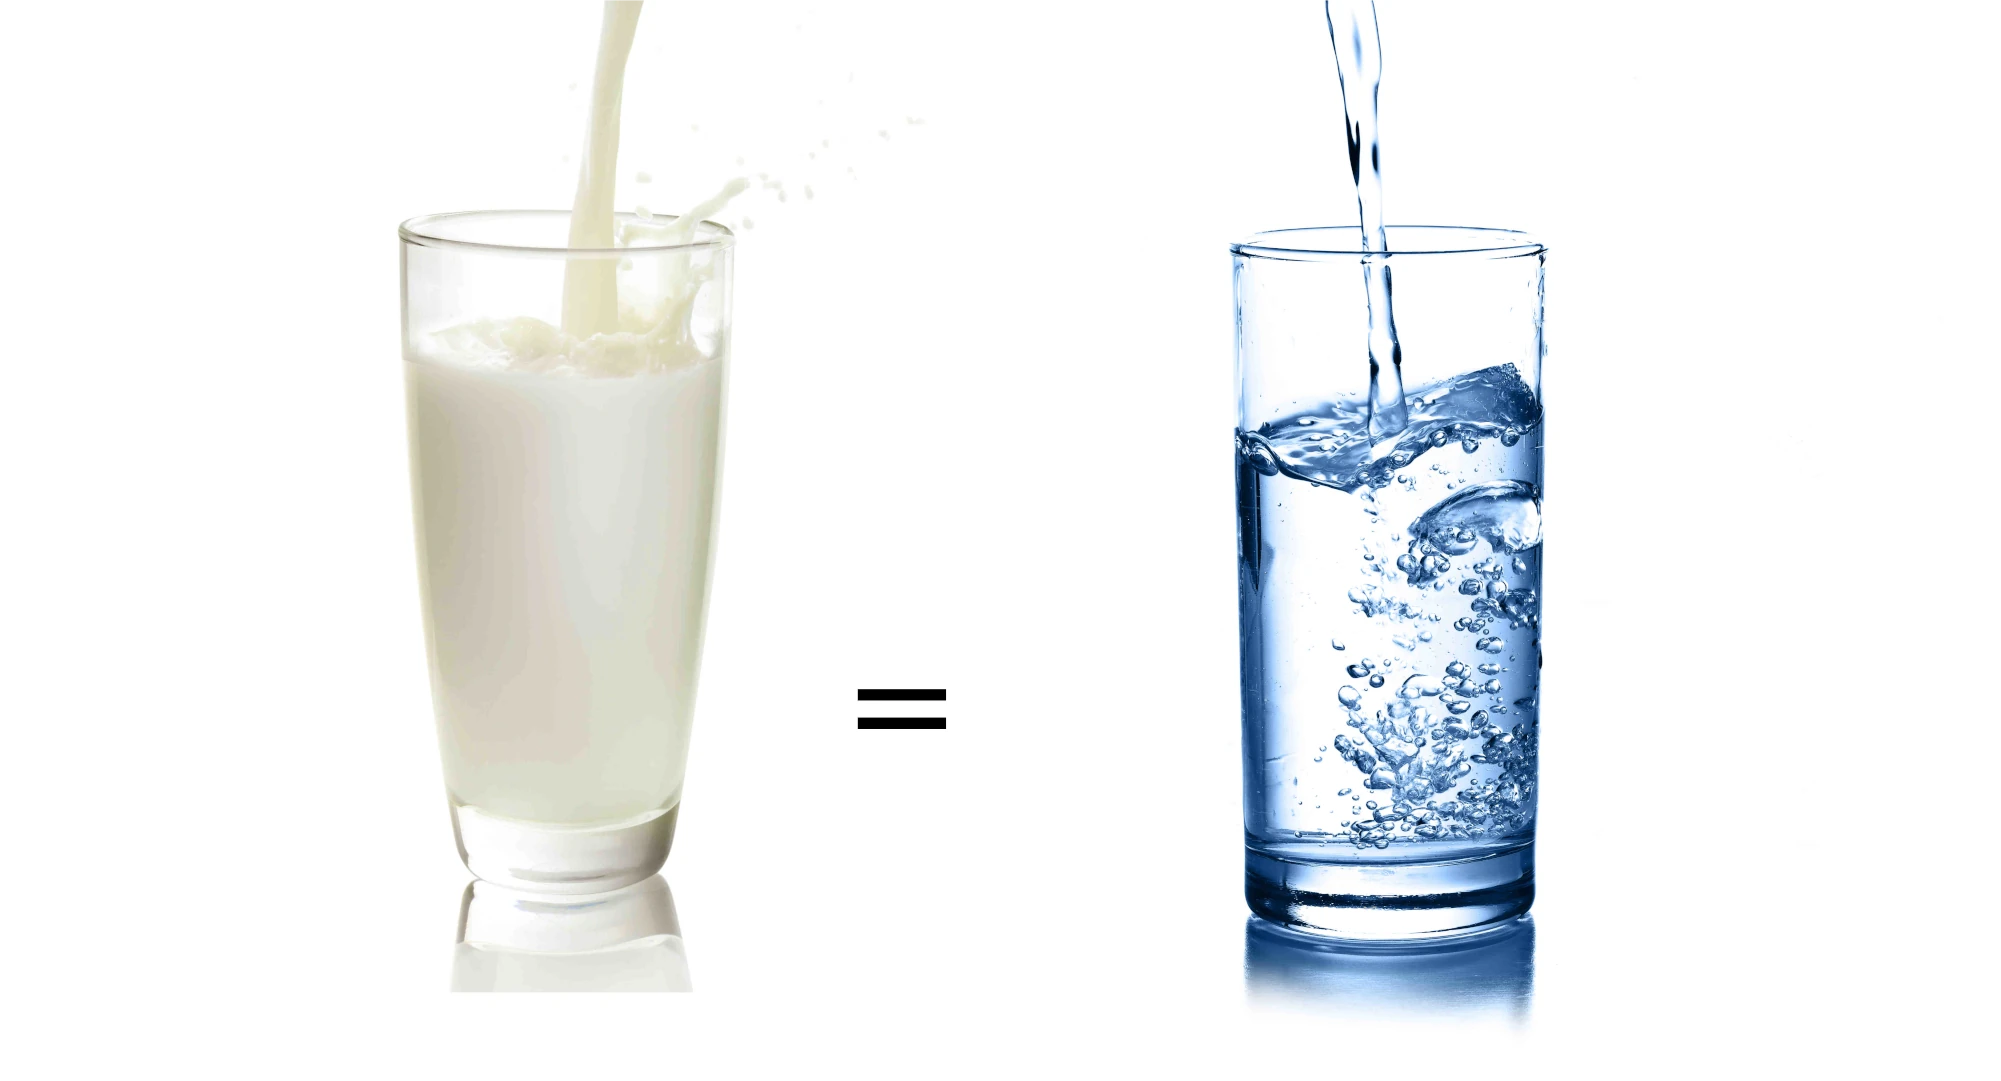 DAs bild zeigt 2 klare Glasgläser nebeneinander,in das linke wird Milch eingegossen und in ds Rechte Wasser